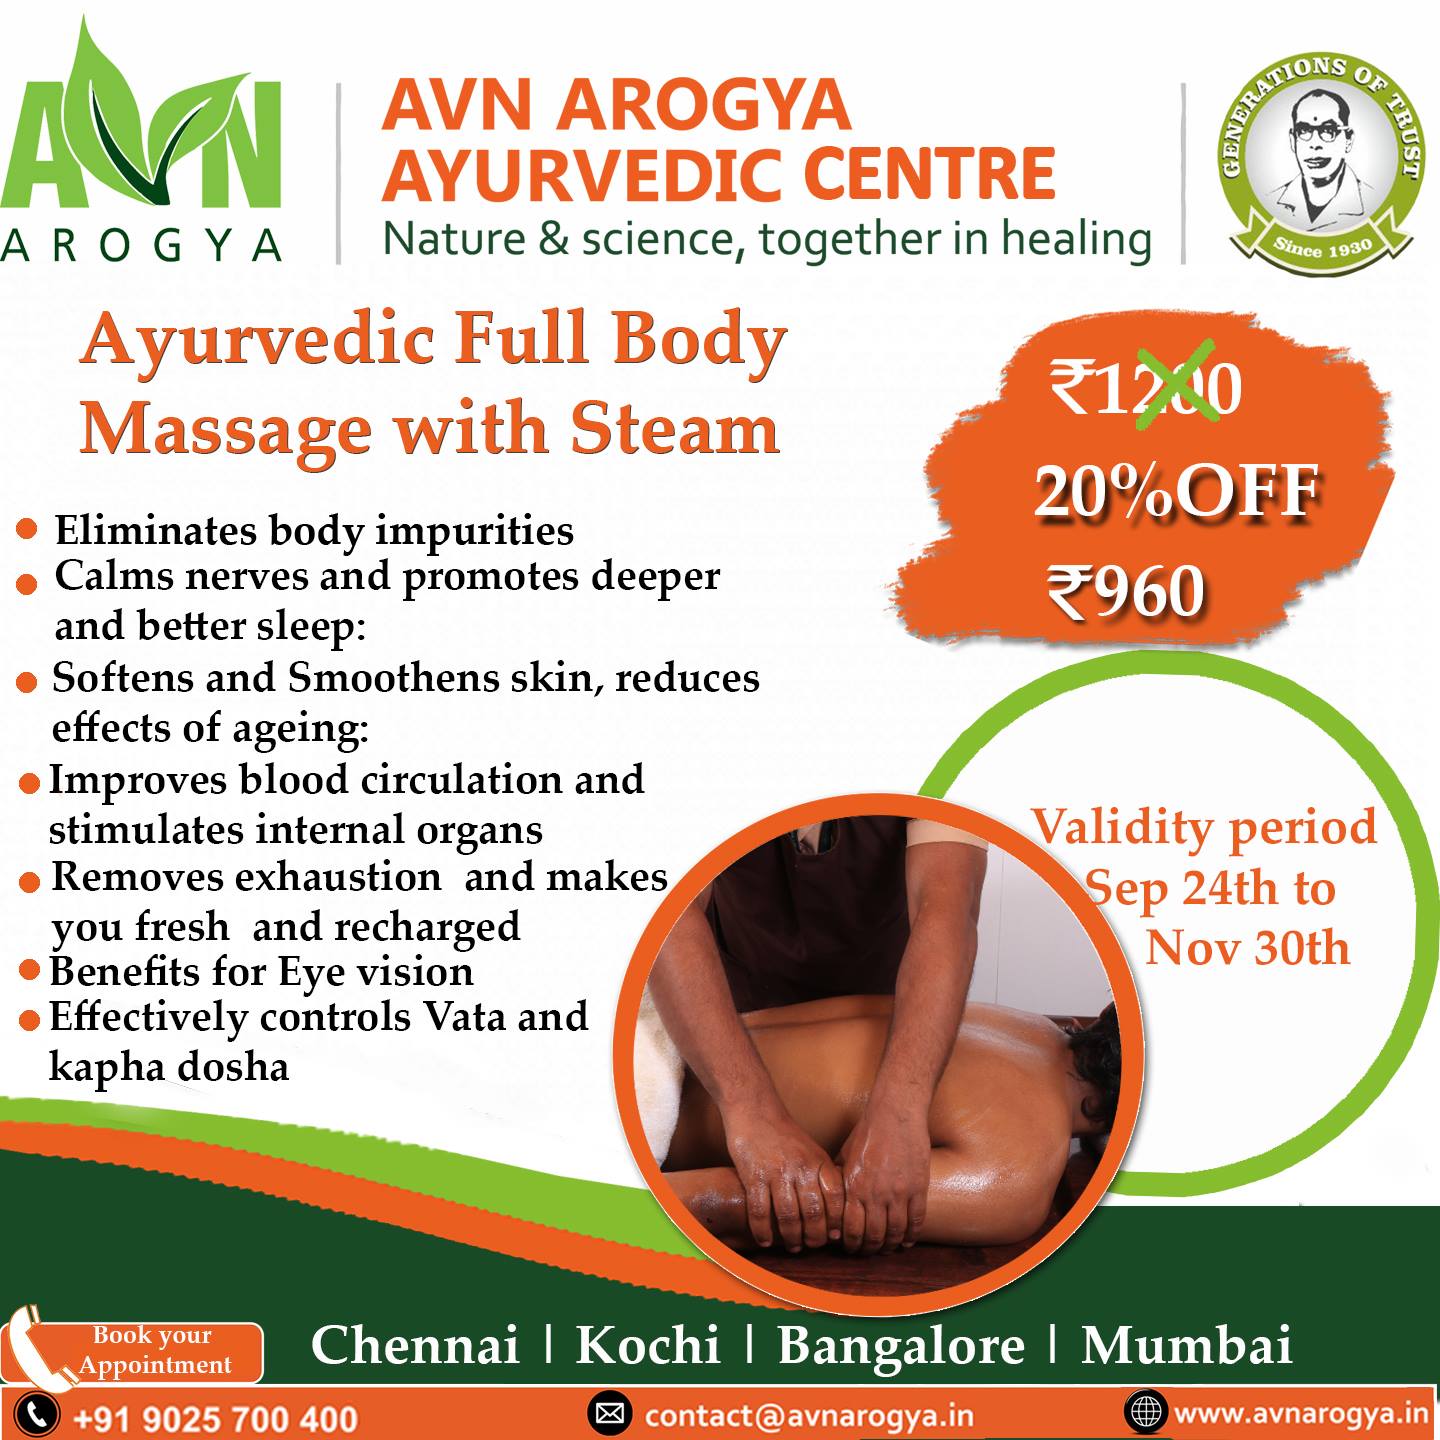 AVN Arogya Ayurvedic Centre – Velachery